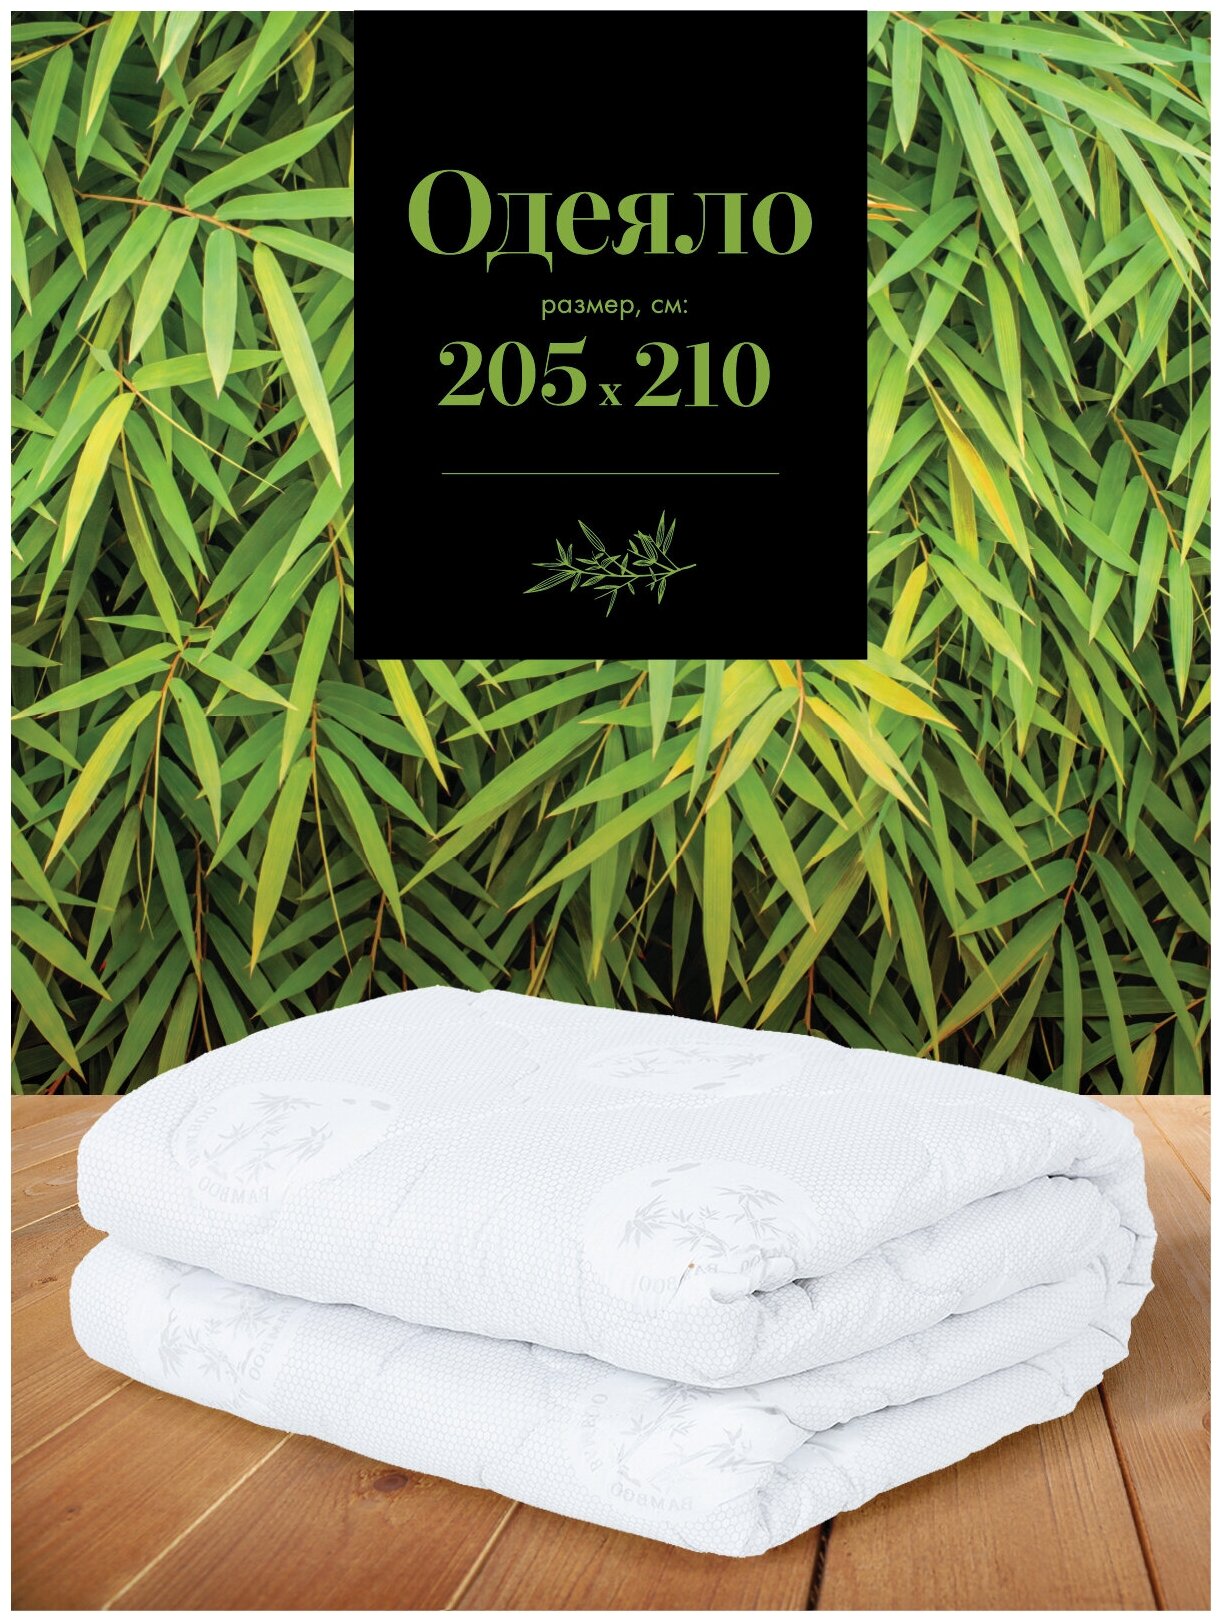 Одеяло /одеяло 210*205 зимнее / летнее одеяло / одеяло евро летнее / одеяло зимнее / одеяло шерстяное тяжелое "Mia Cara" Bellasonno 210x205 бамбук - фотография № 1